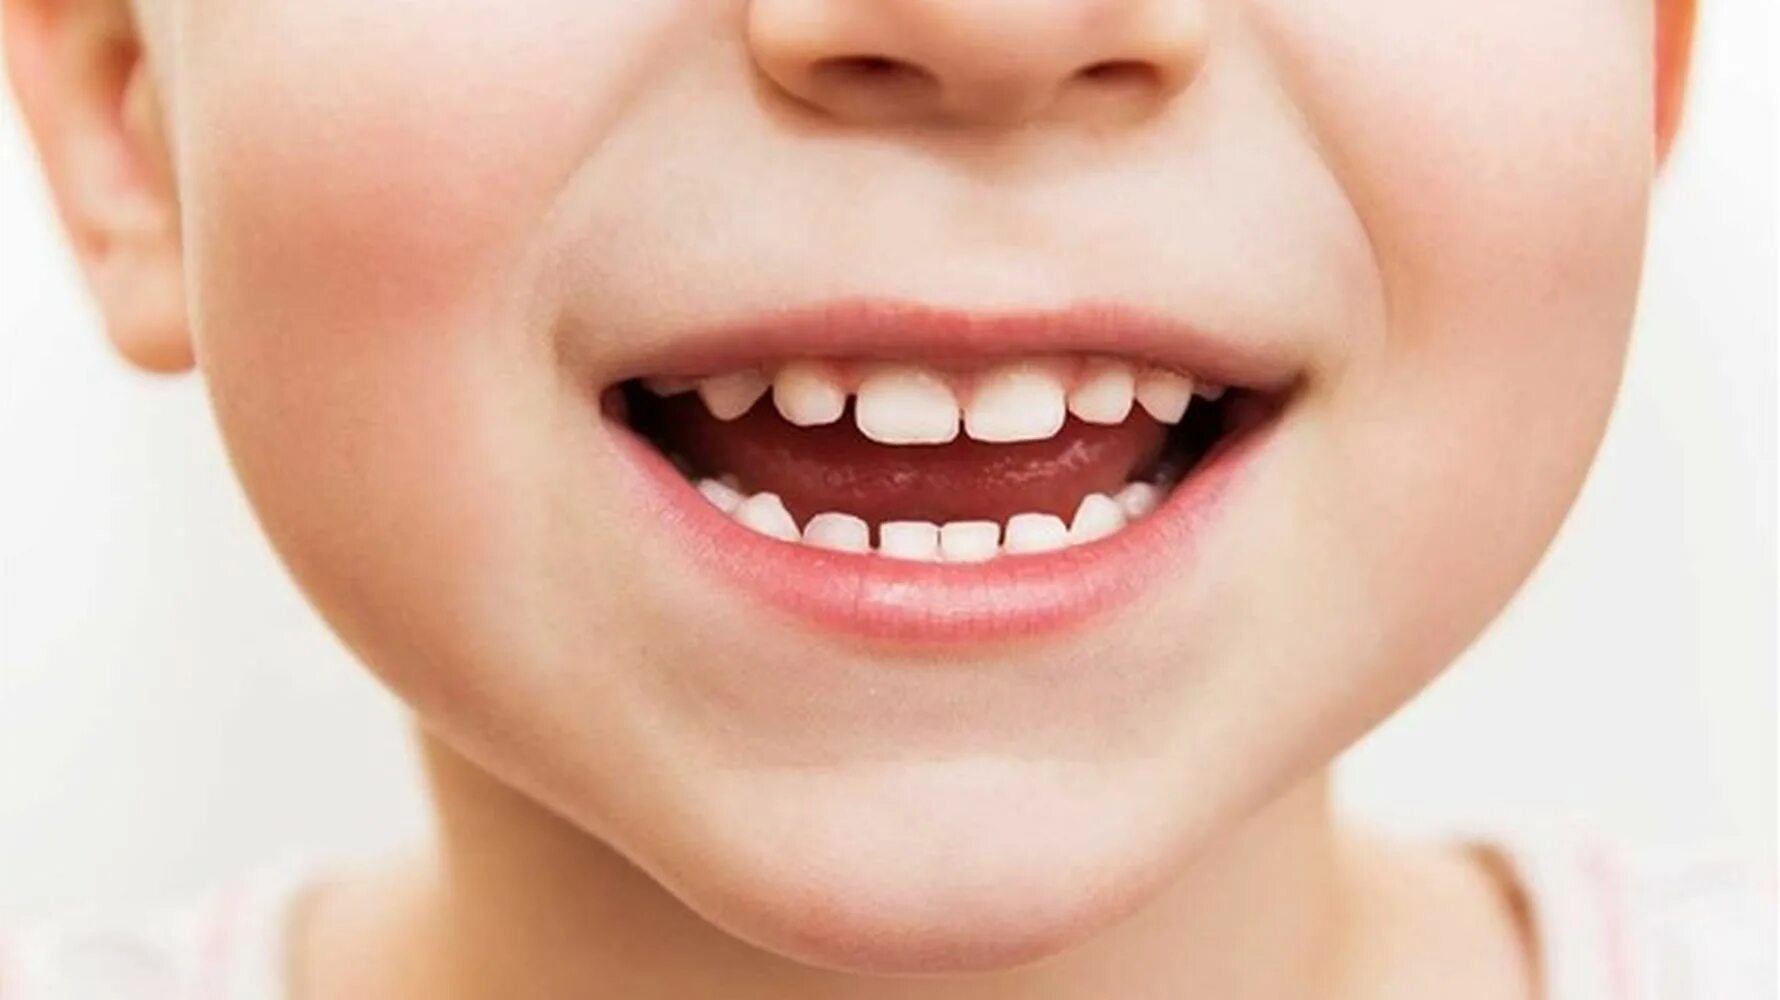 Зубы человека у детей. Красивые детские зубы. Красивая улыбка. Детская улыбка.